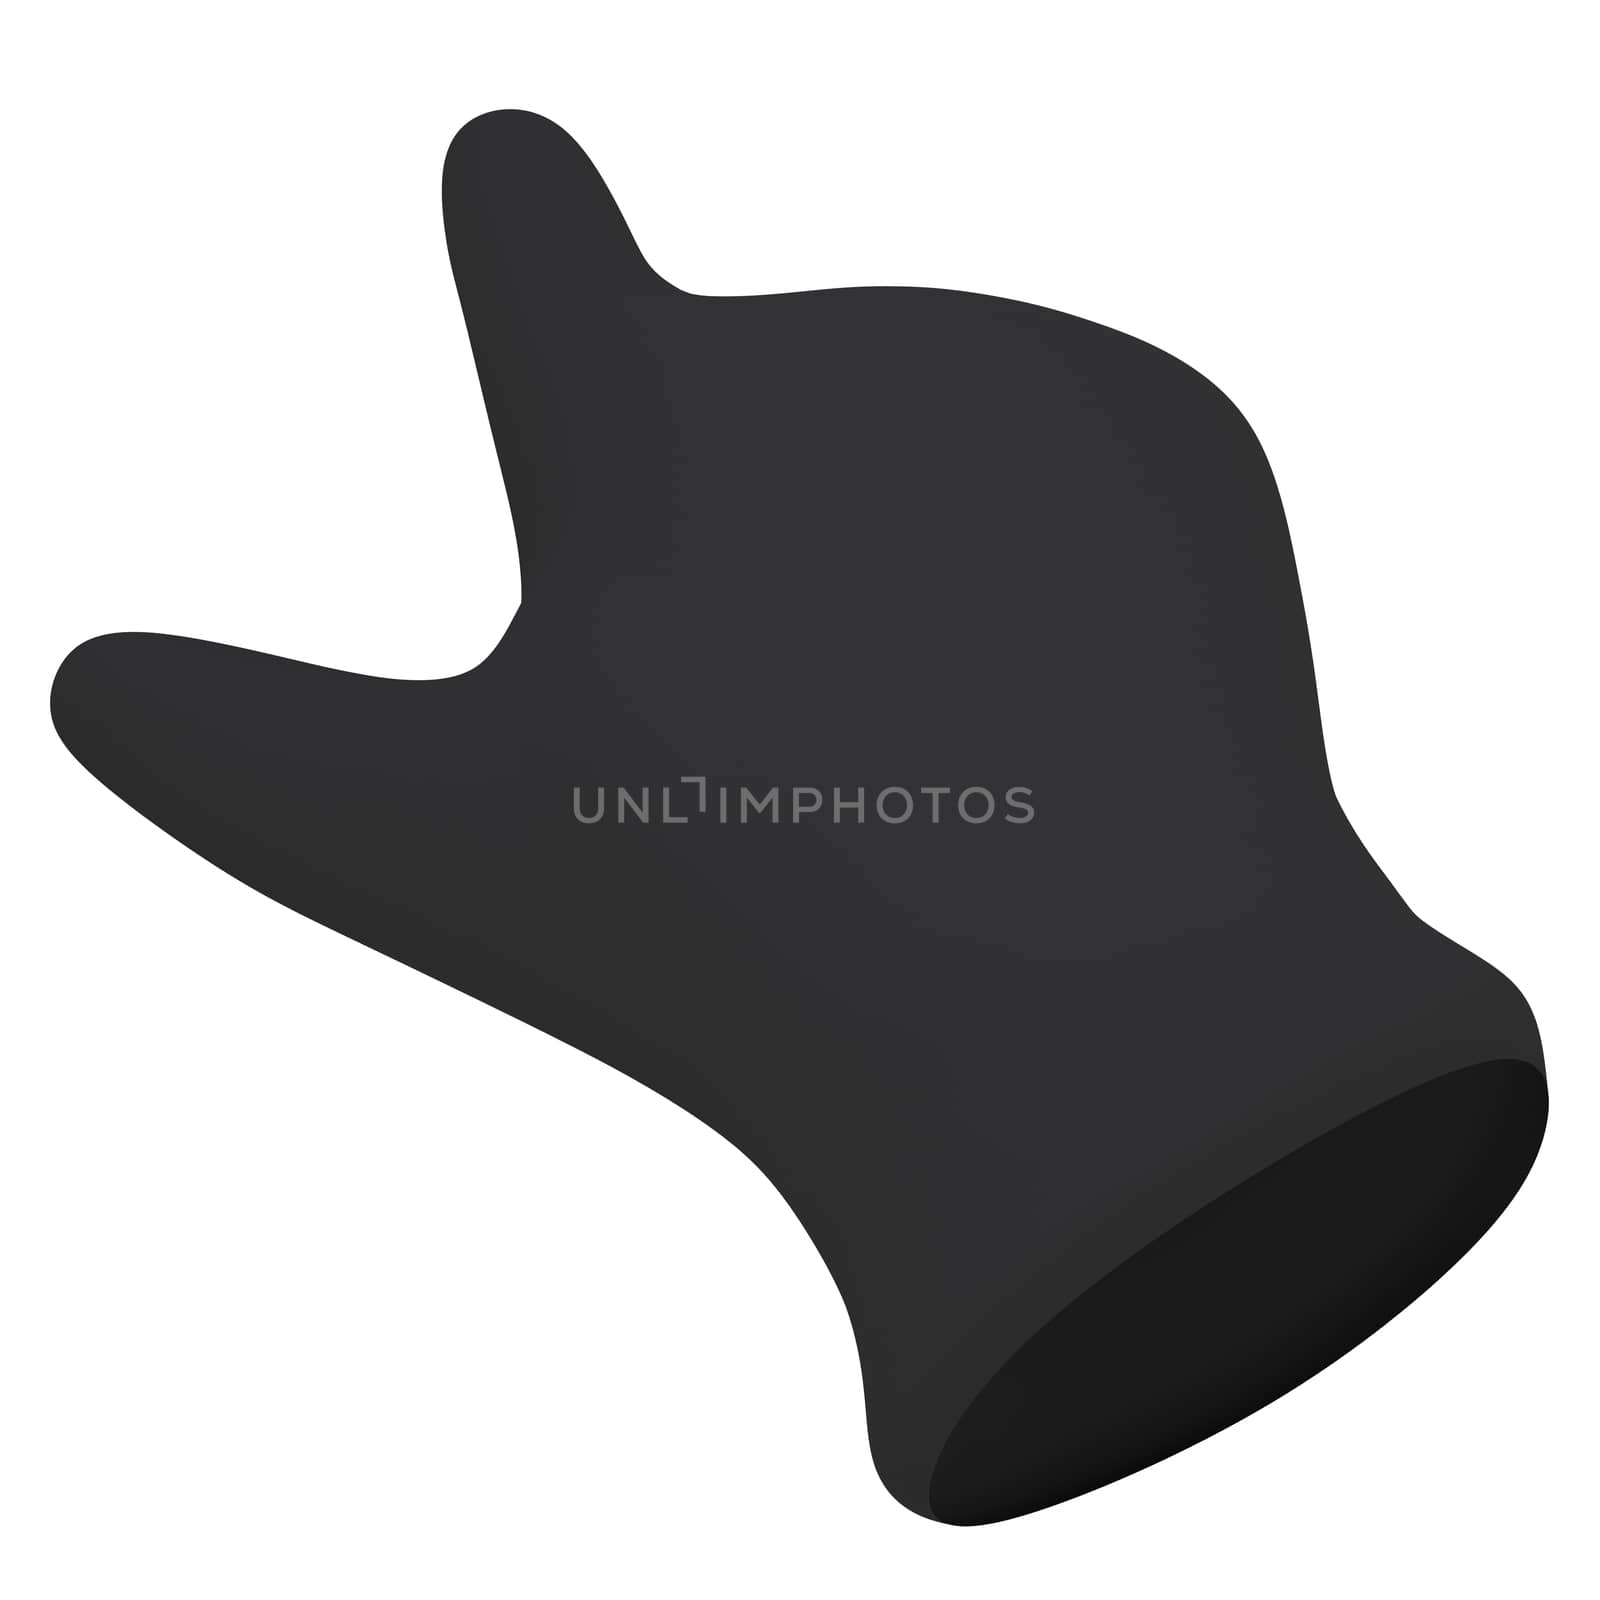 Black gloves. Forefinger shows. 3d render isolated on white background